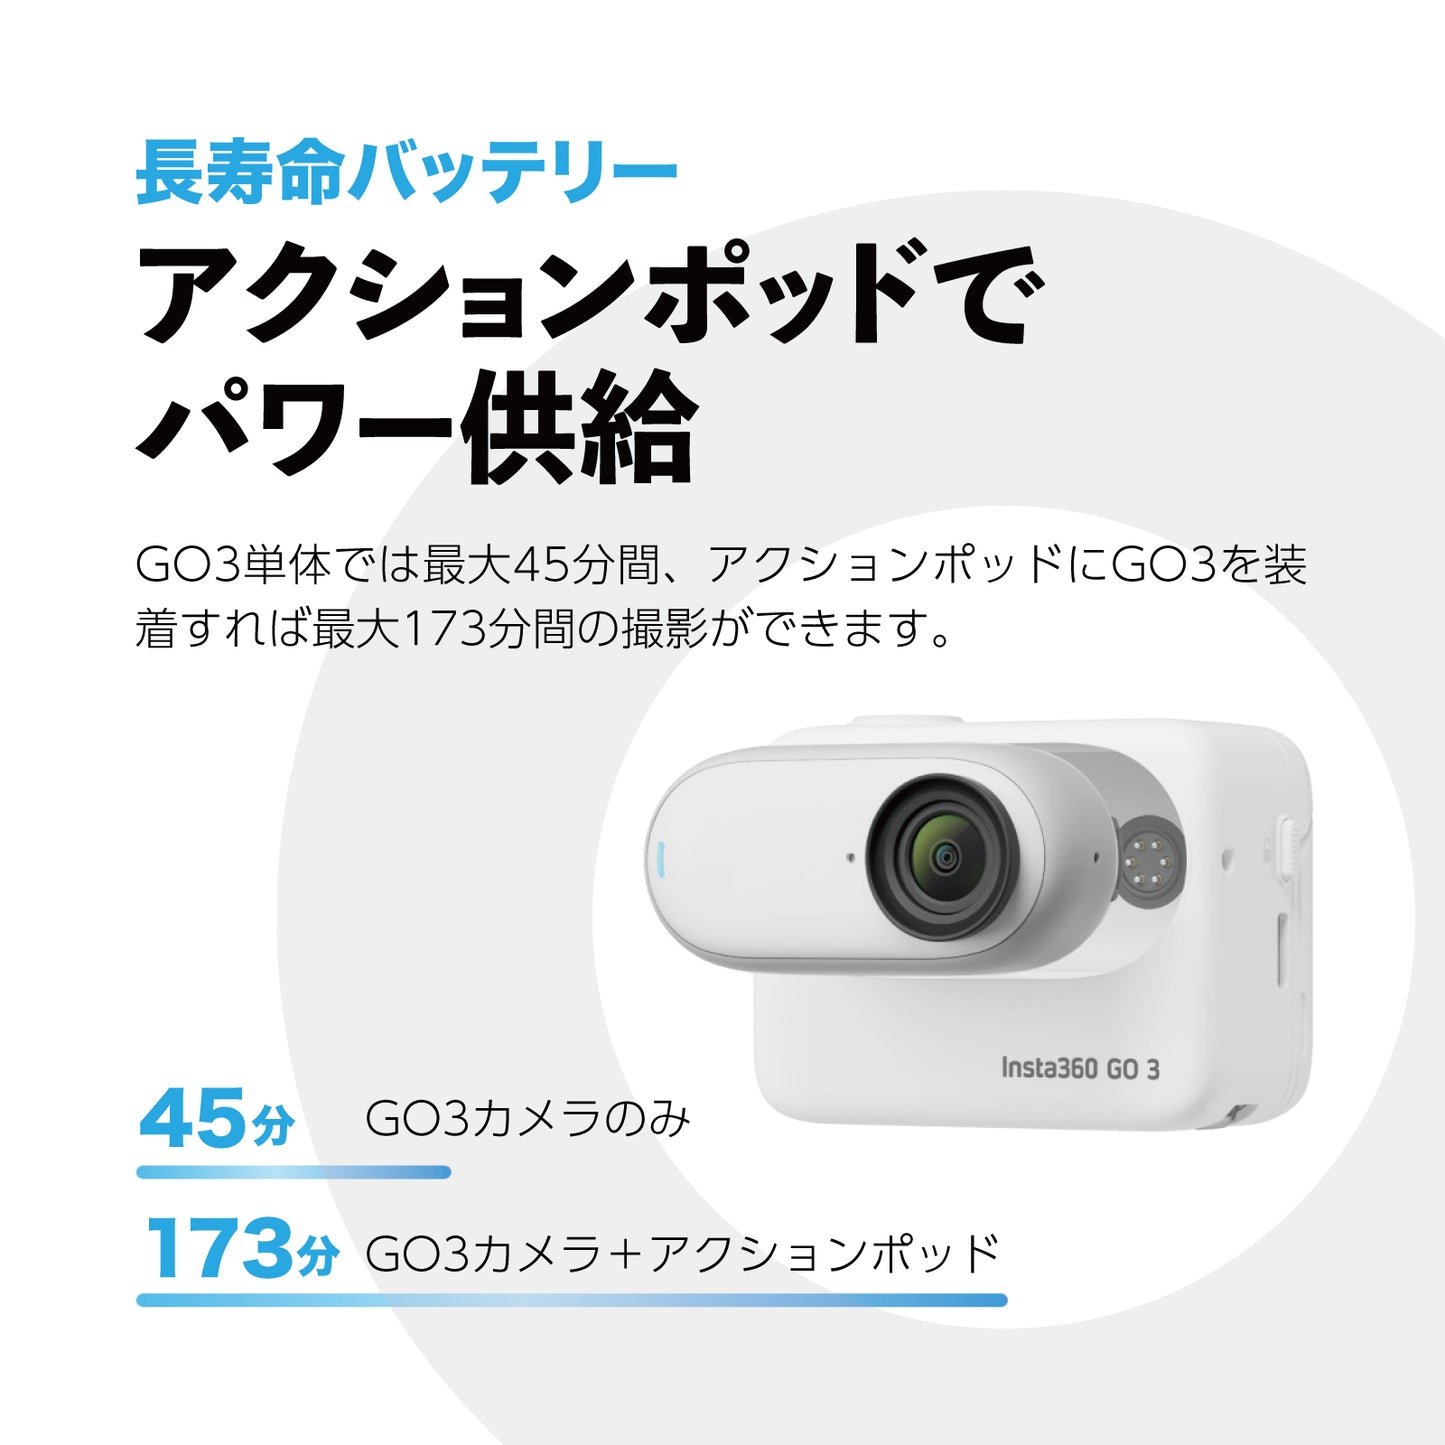 Insta360 GO 3 64GB / アクションカメラ